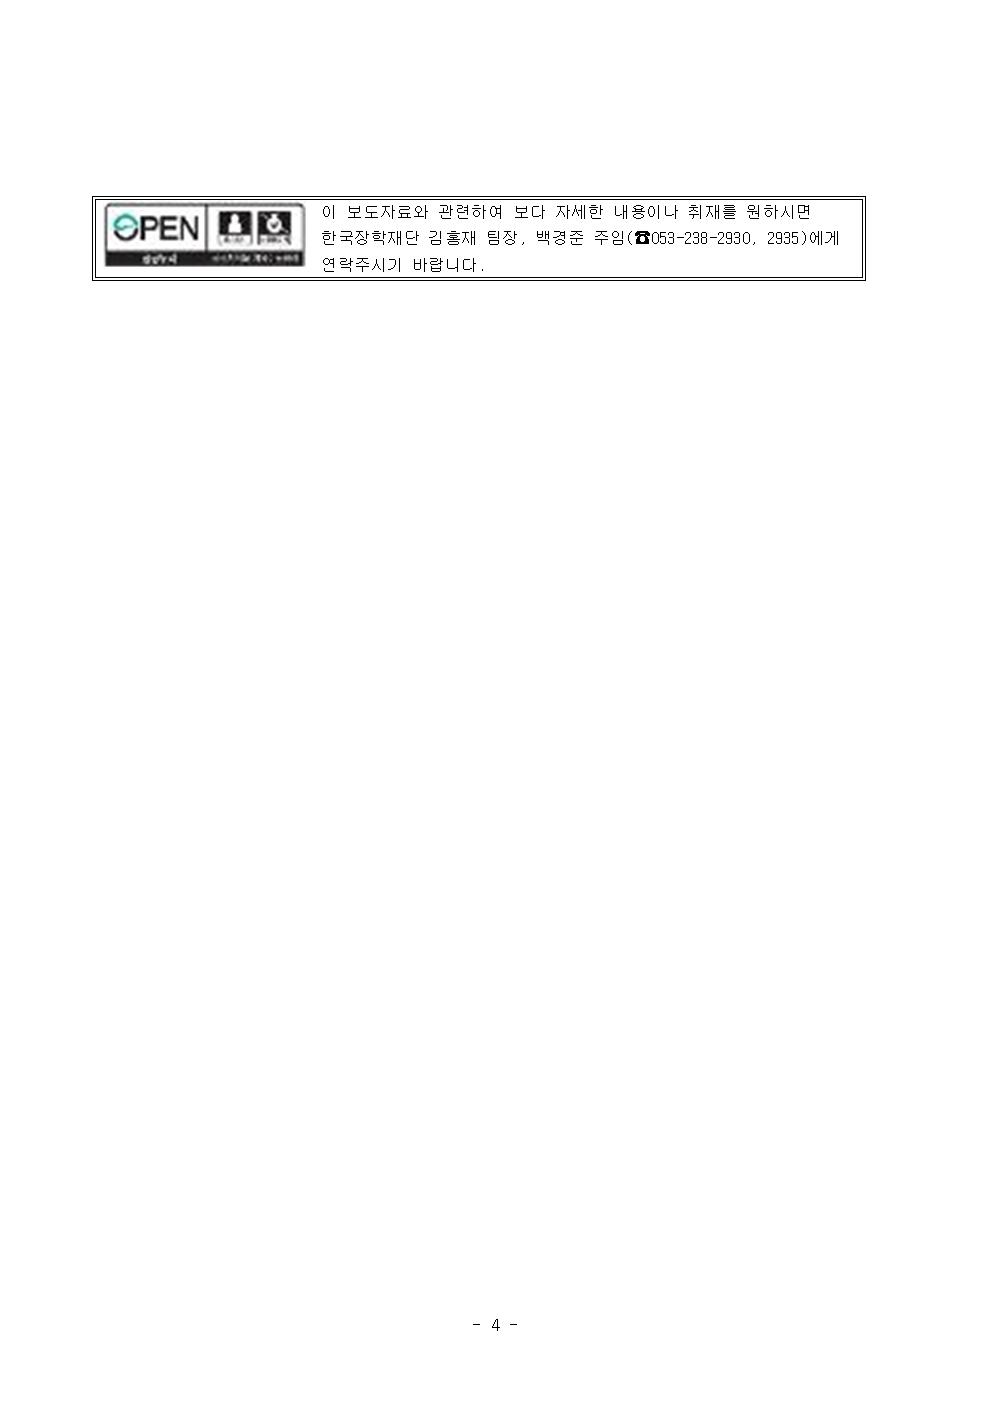 07-01(월)[보도자료] 한국장학재단 「제1회 한국장학패널 학술대회」 개최004.jpg